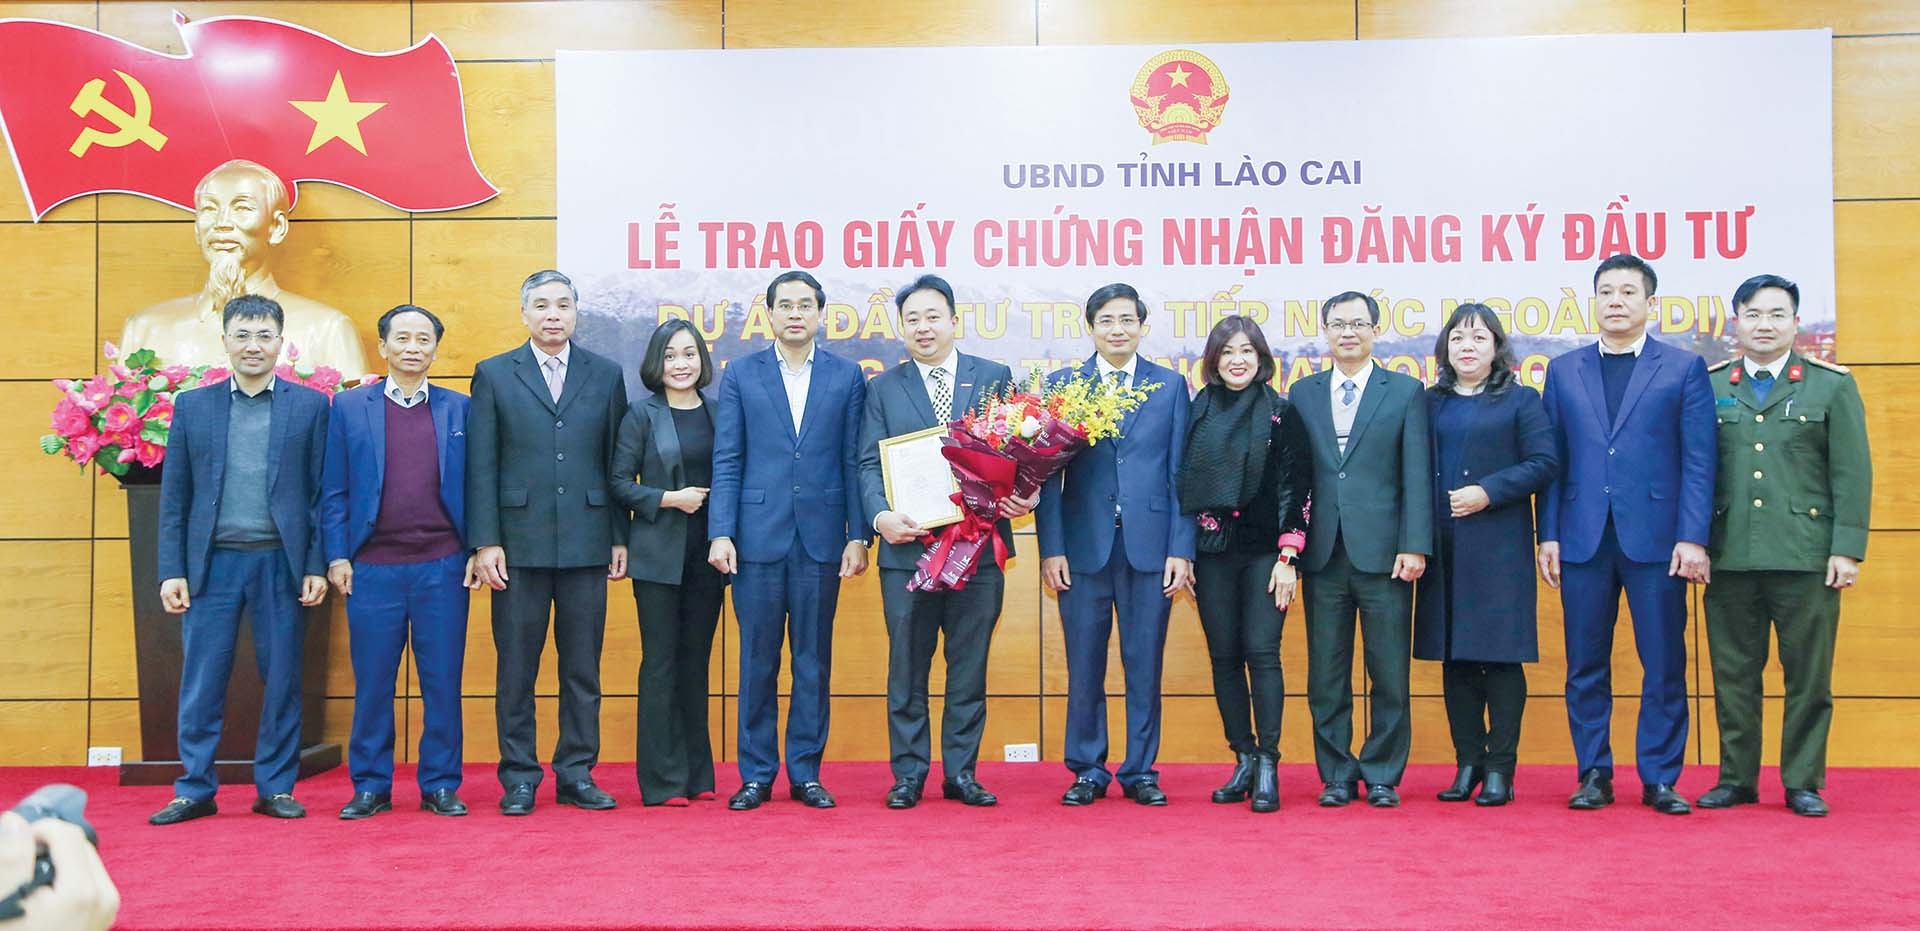 Lễ trao giấy chứng nhận đăng ký đầu tư dự án trực tiếp nước ngoài (FDI) Trung tâm thương mại Go! Lào Cai, ngày 20/1/2021. (Nguồn: TTXVN)